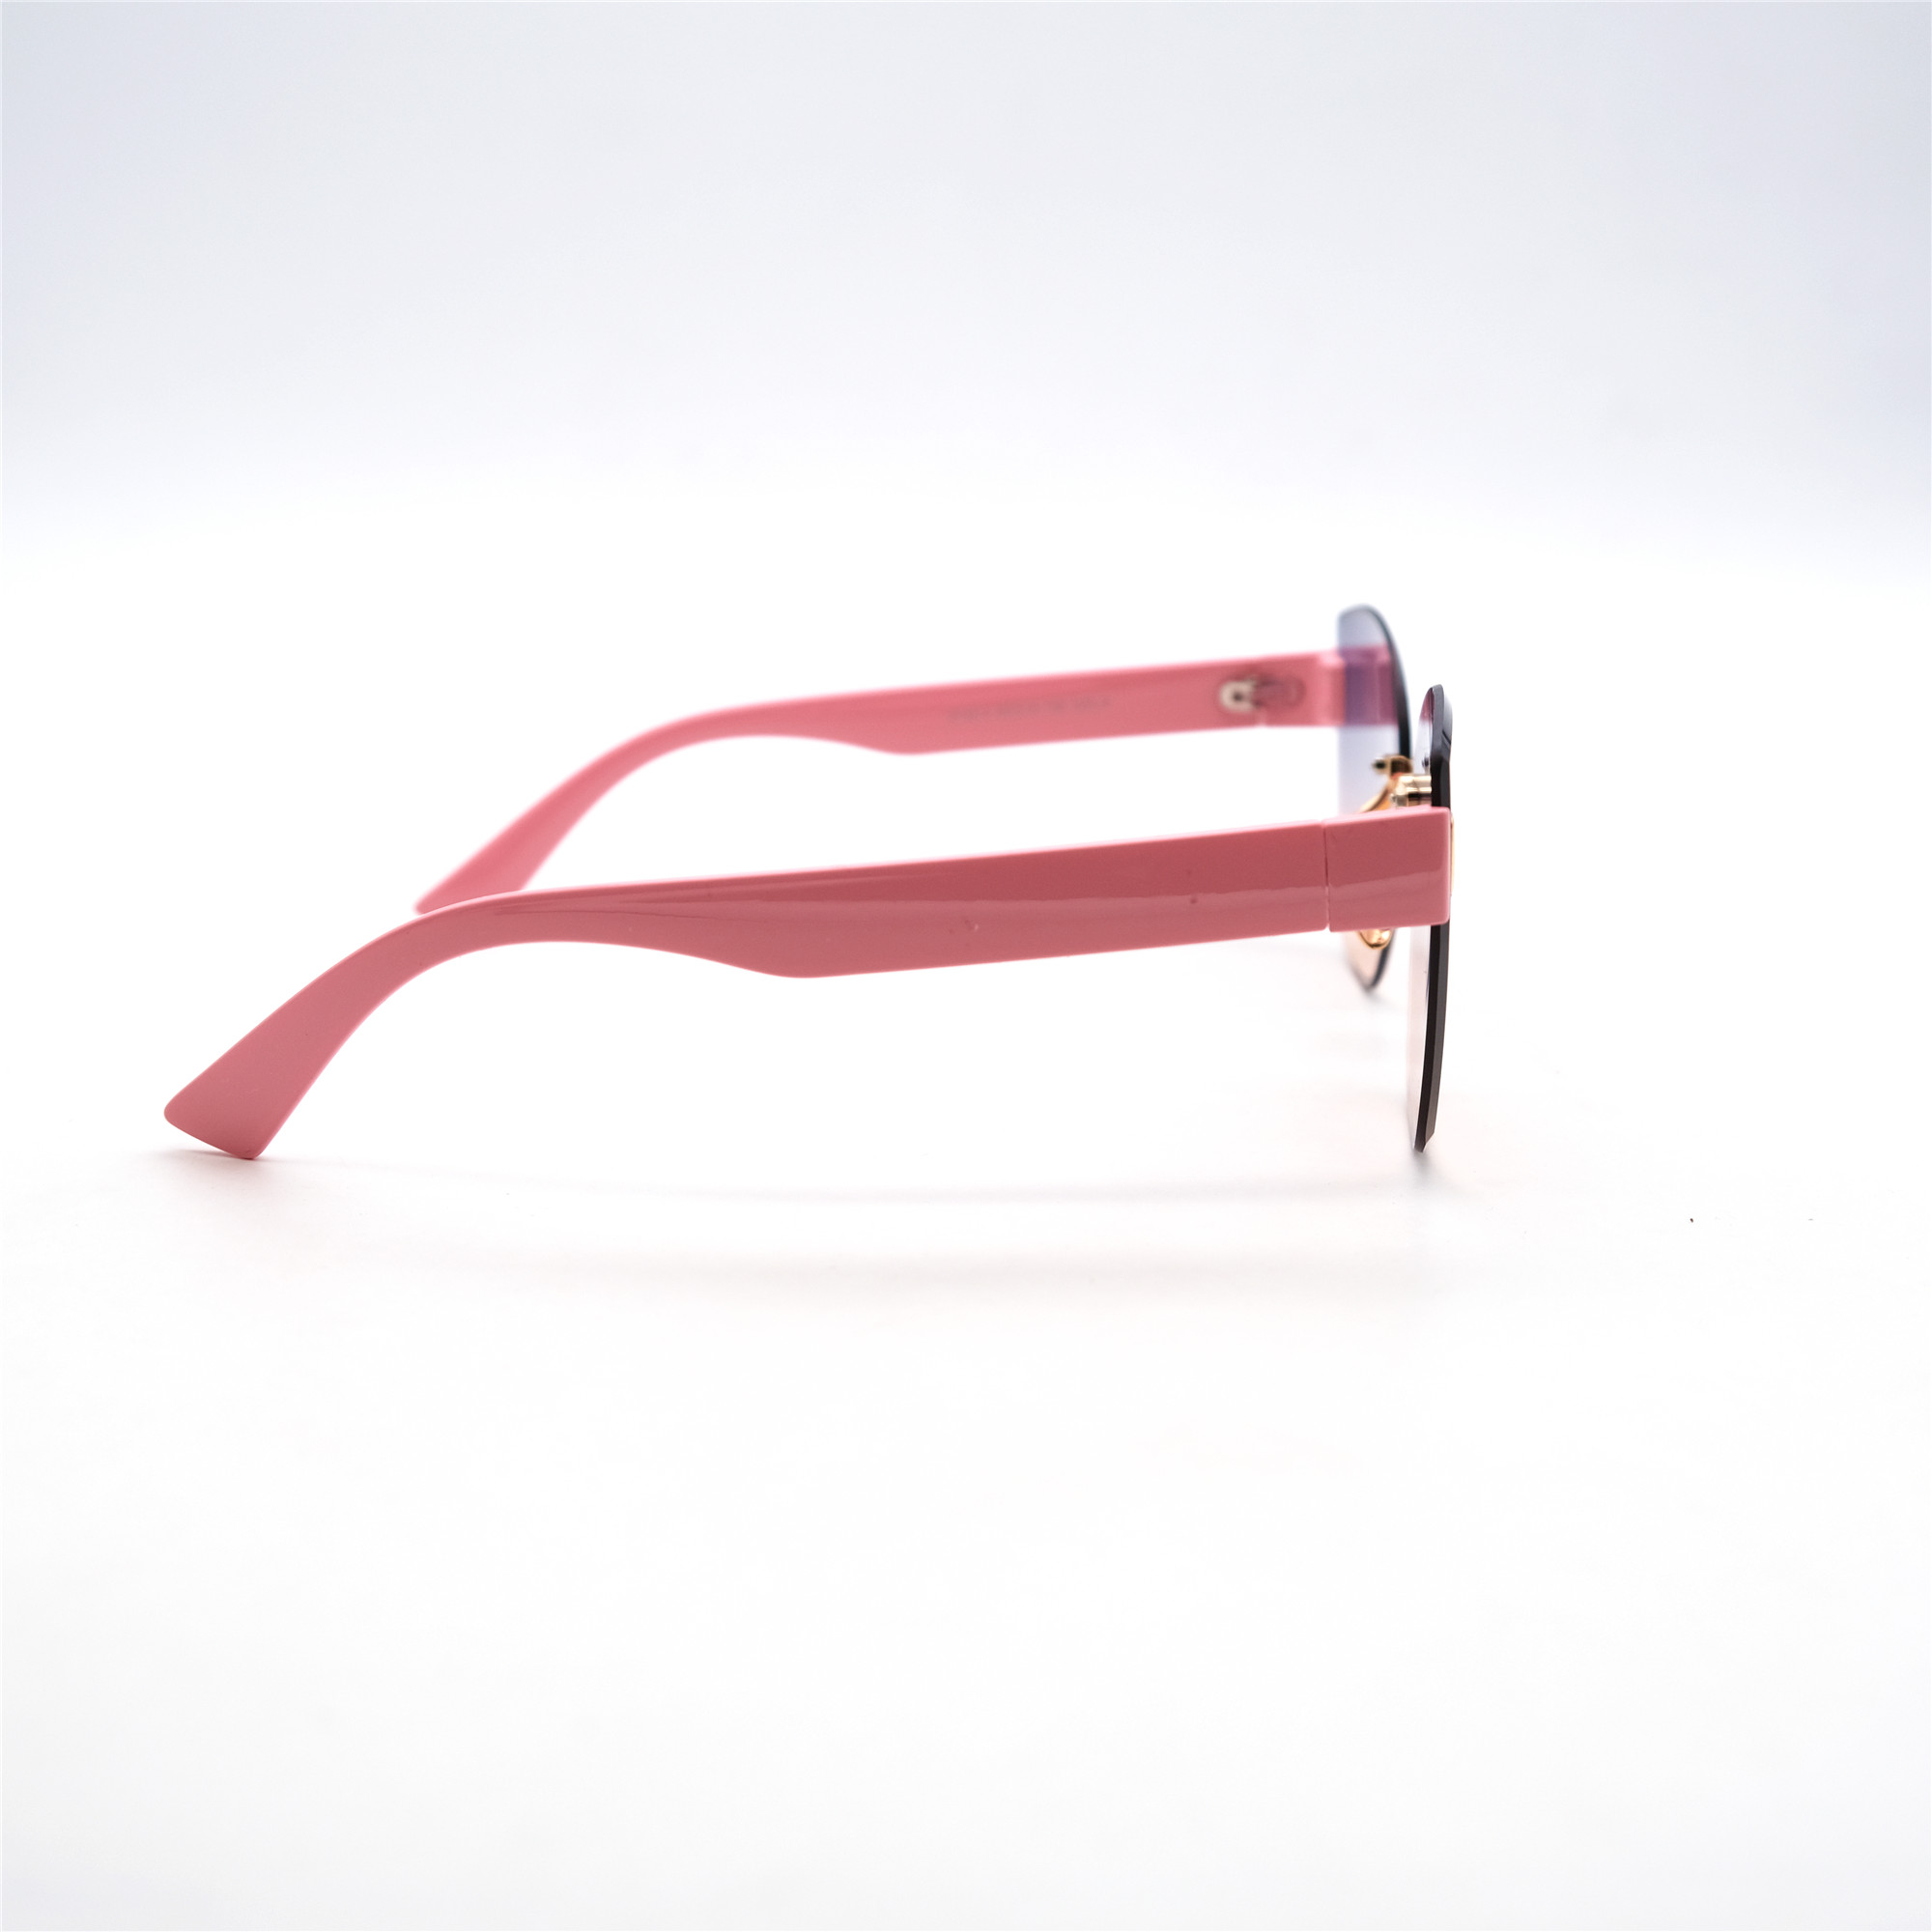  Солнцезащитные очки картинка Женские Caipai  Классический 8149-4-C6 